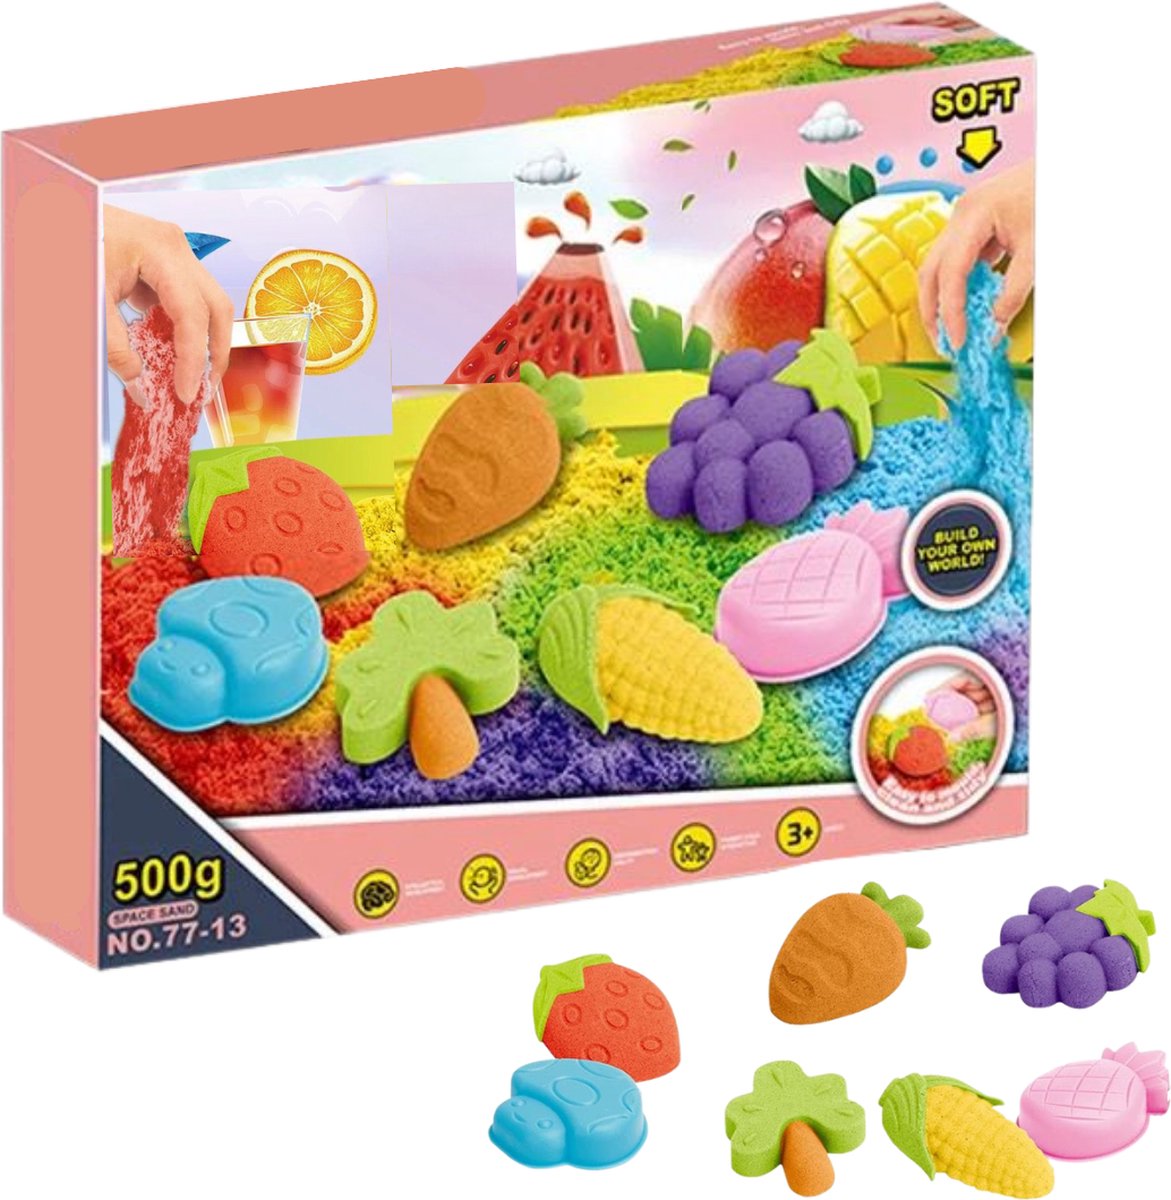 Speelzand - Speelgoed � Kinetic Sand � Inclusief twee kleuren en vormpjes � Magic Sand � Voor jongens en meisjes